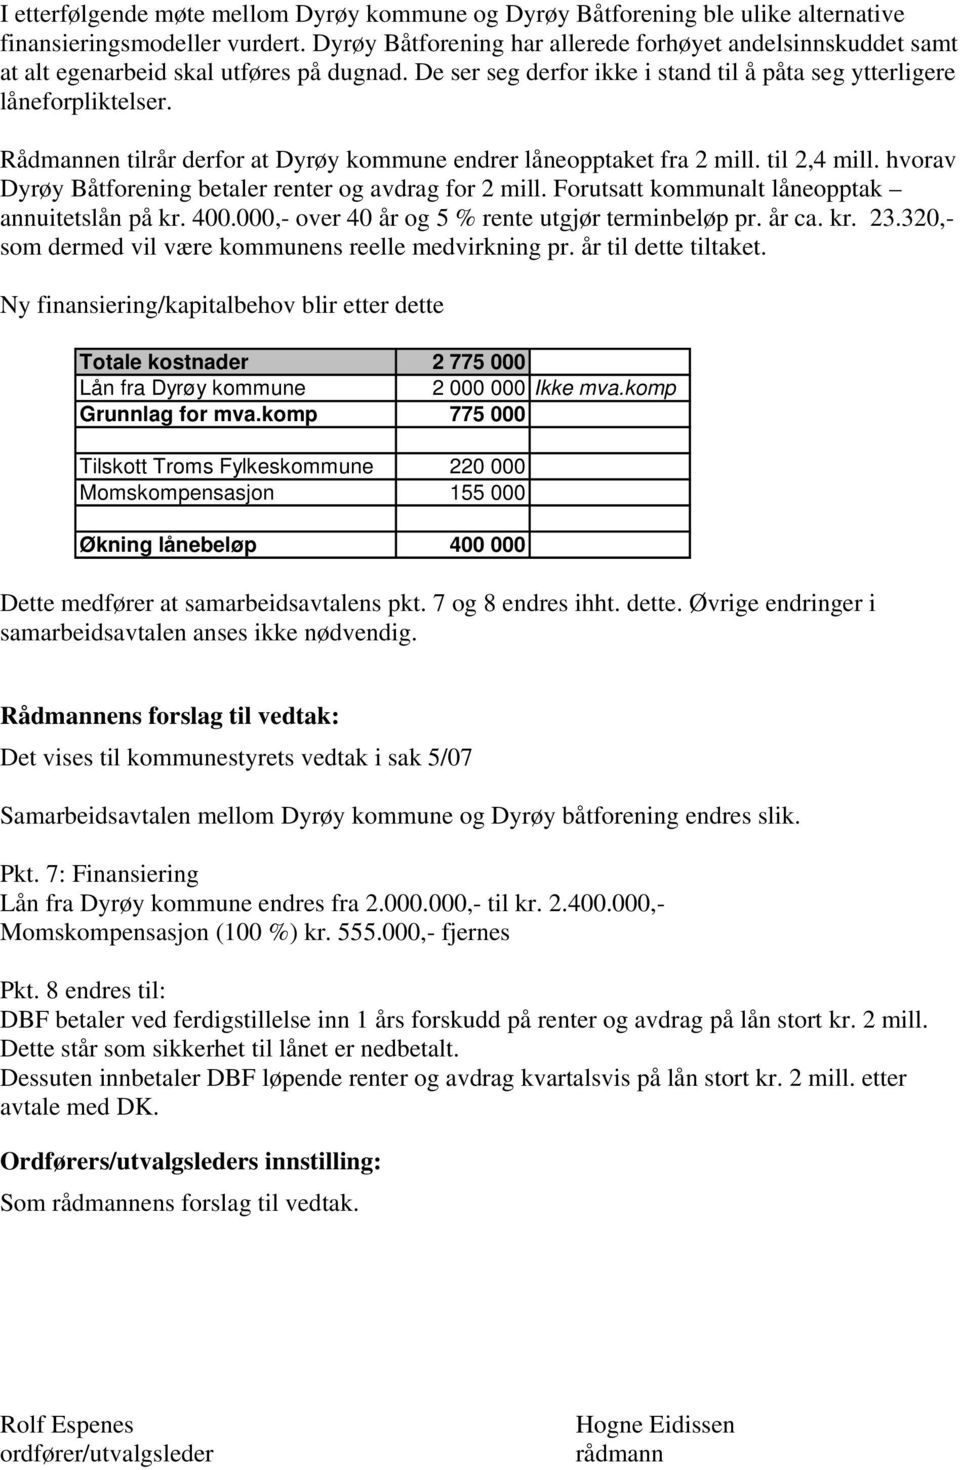 Rådmannen tilrår derfor at Dyrøy kommune endrer låneopptaket fra 2 mill. til 2,4 mill. hvorav Dyrøy Båtforening betaler renter og avdrag for 2 mill. Forutsatt kommunalt låneopptak annuitetslån på kr.